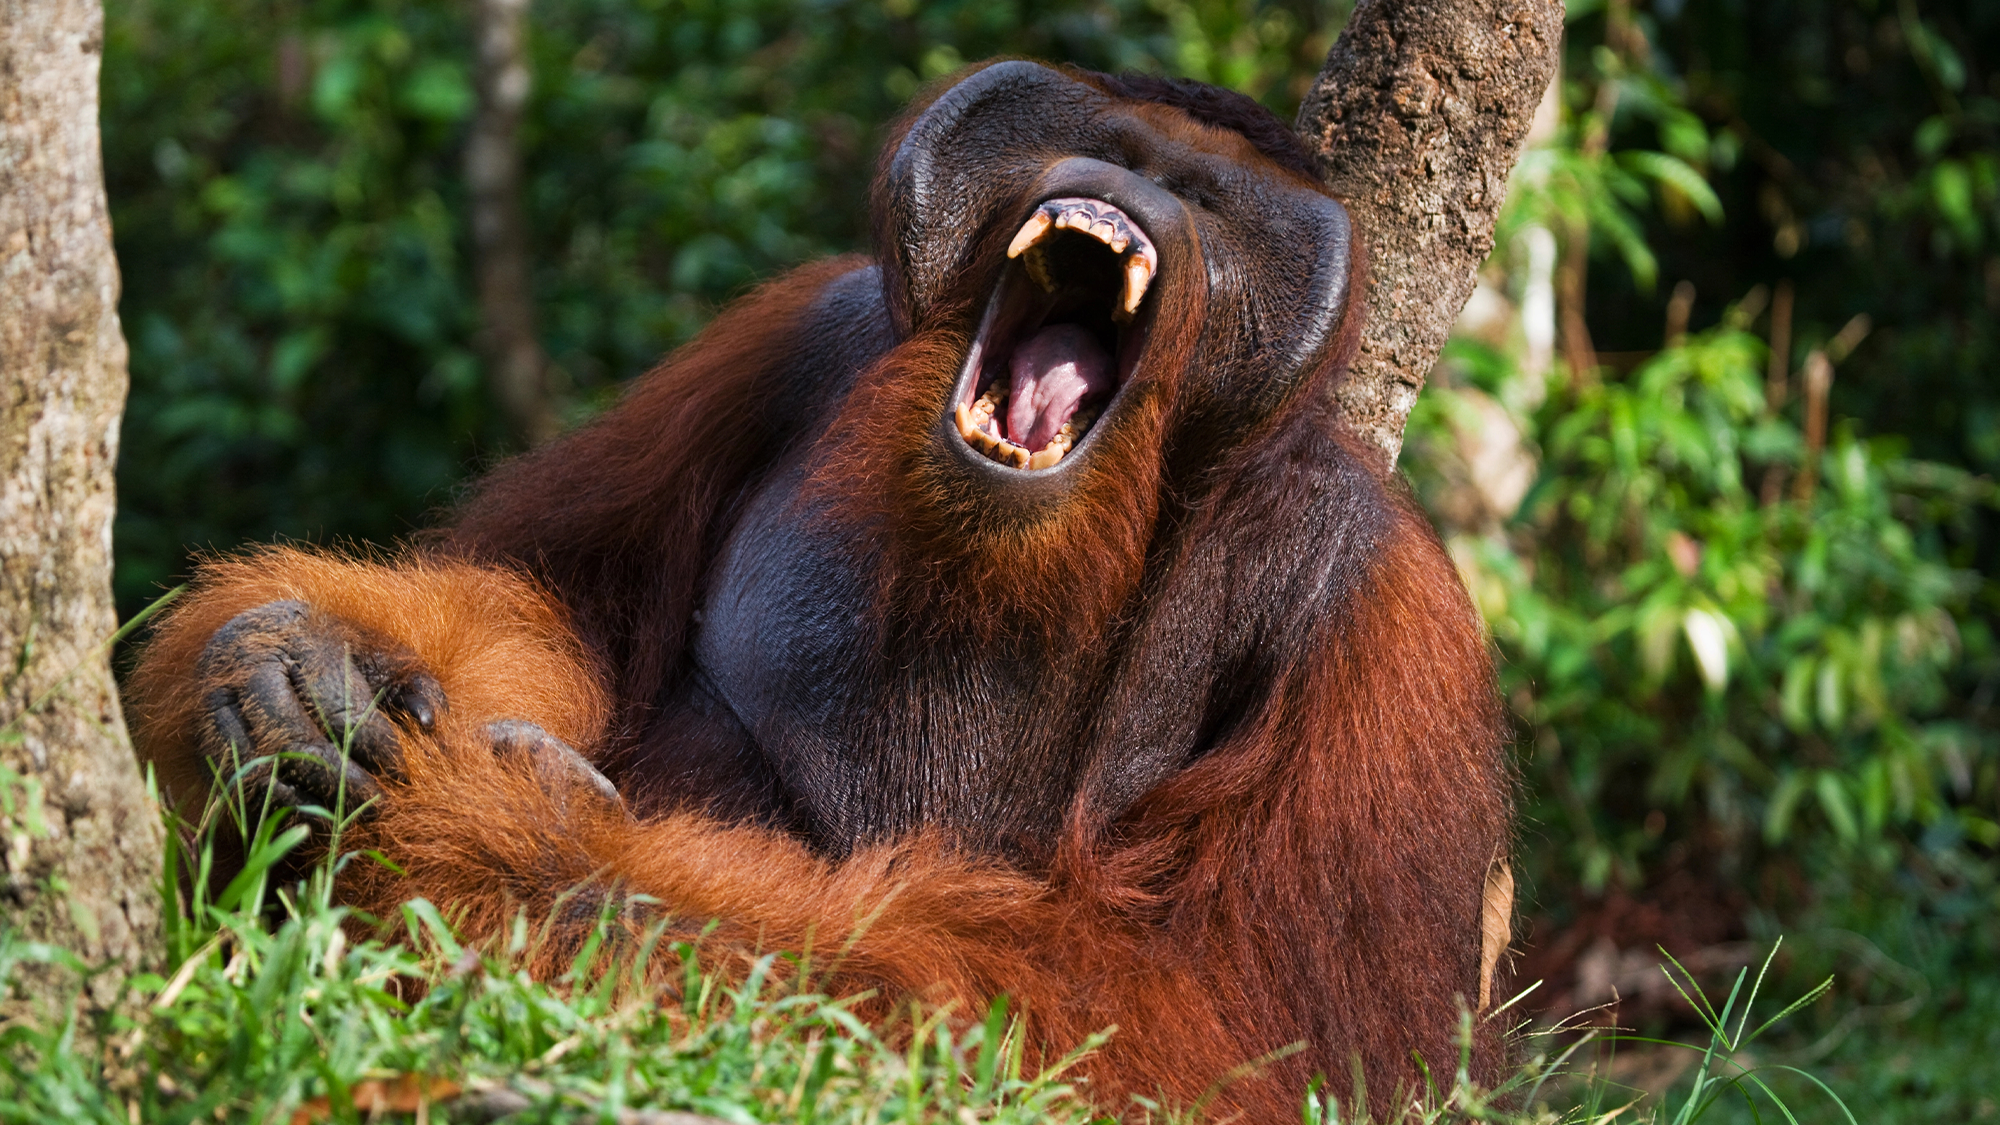 De kenmerkende kreten van de orang-oetan zijn gedecodeerd met behulp van kunstmatige intelligentie